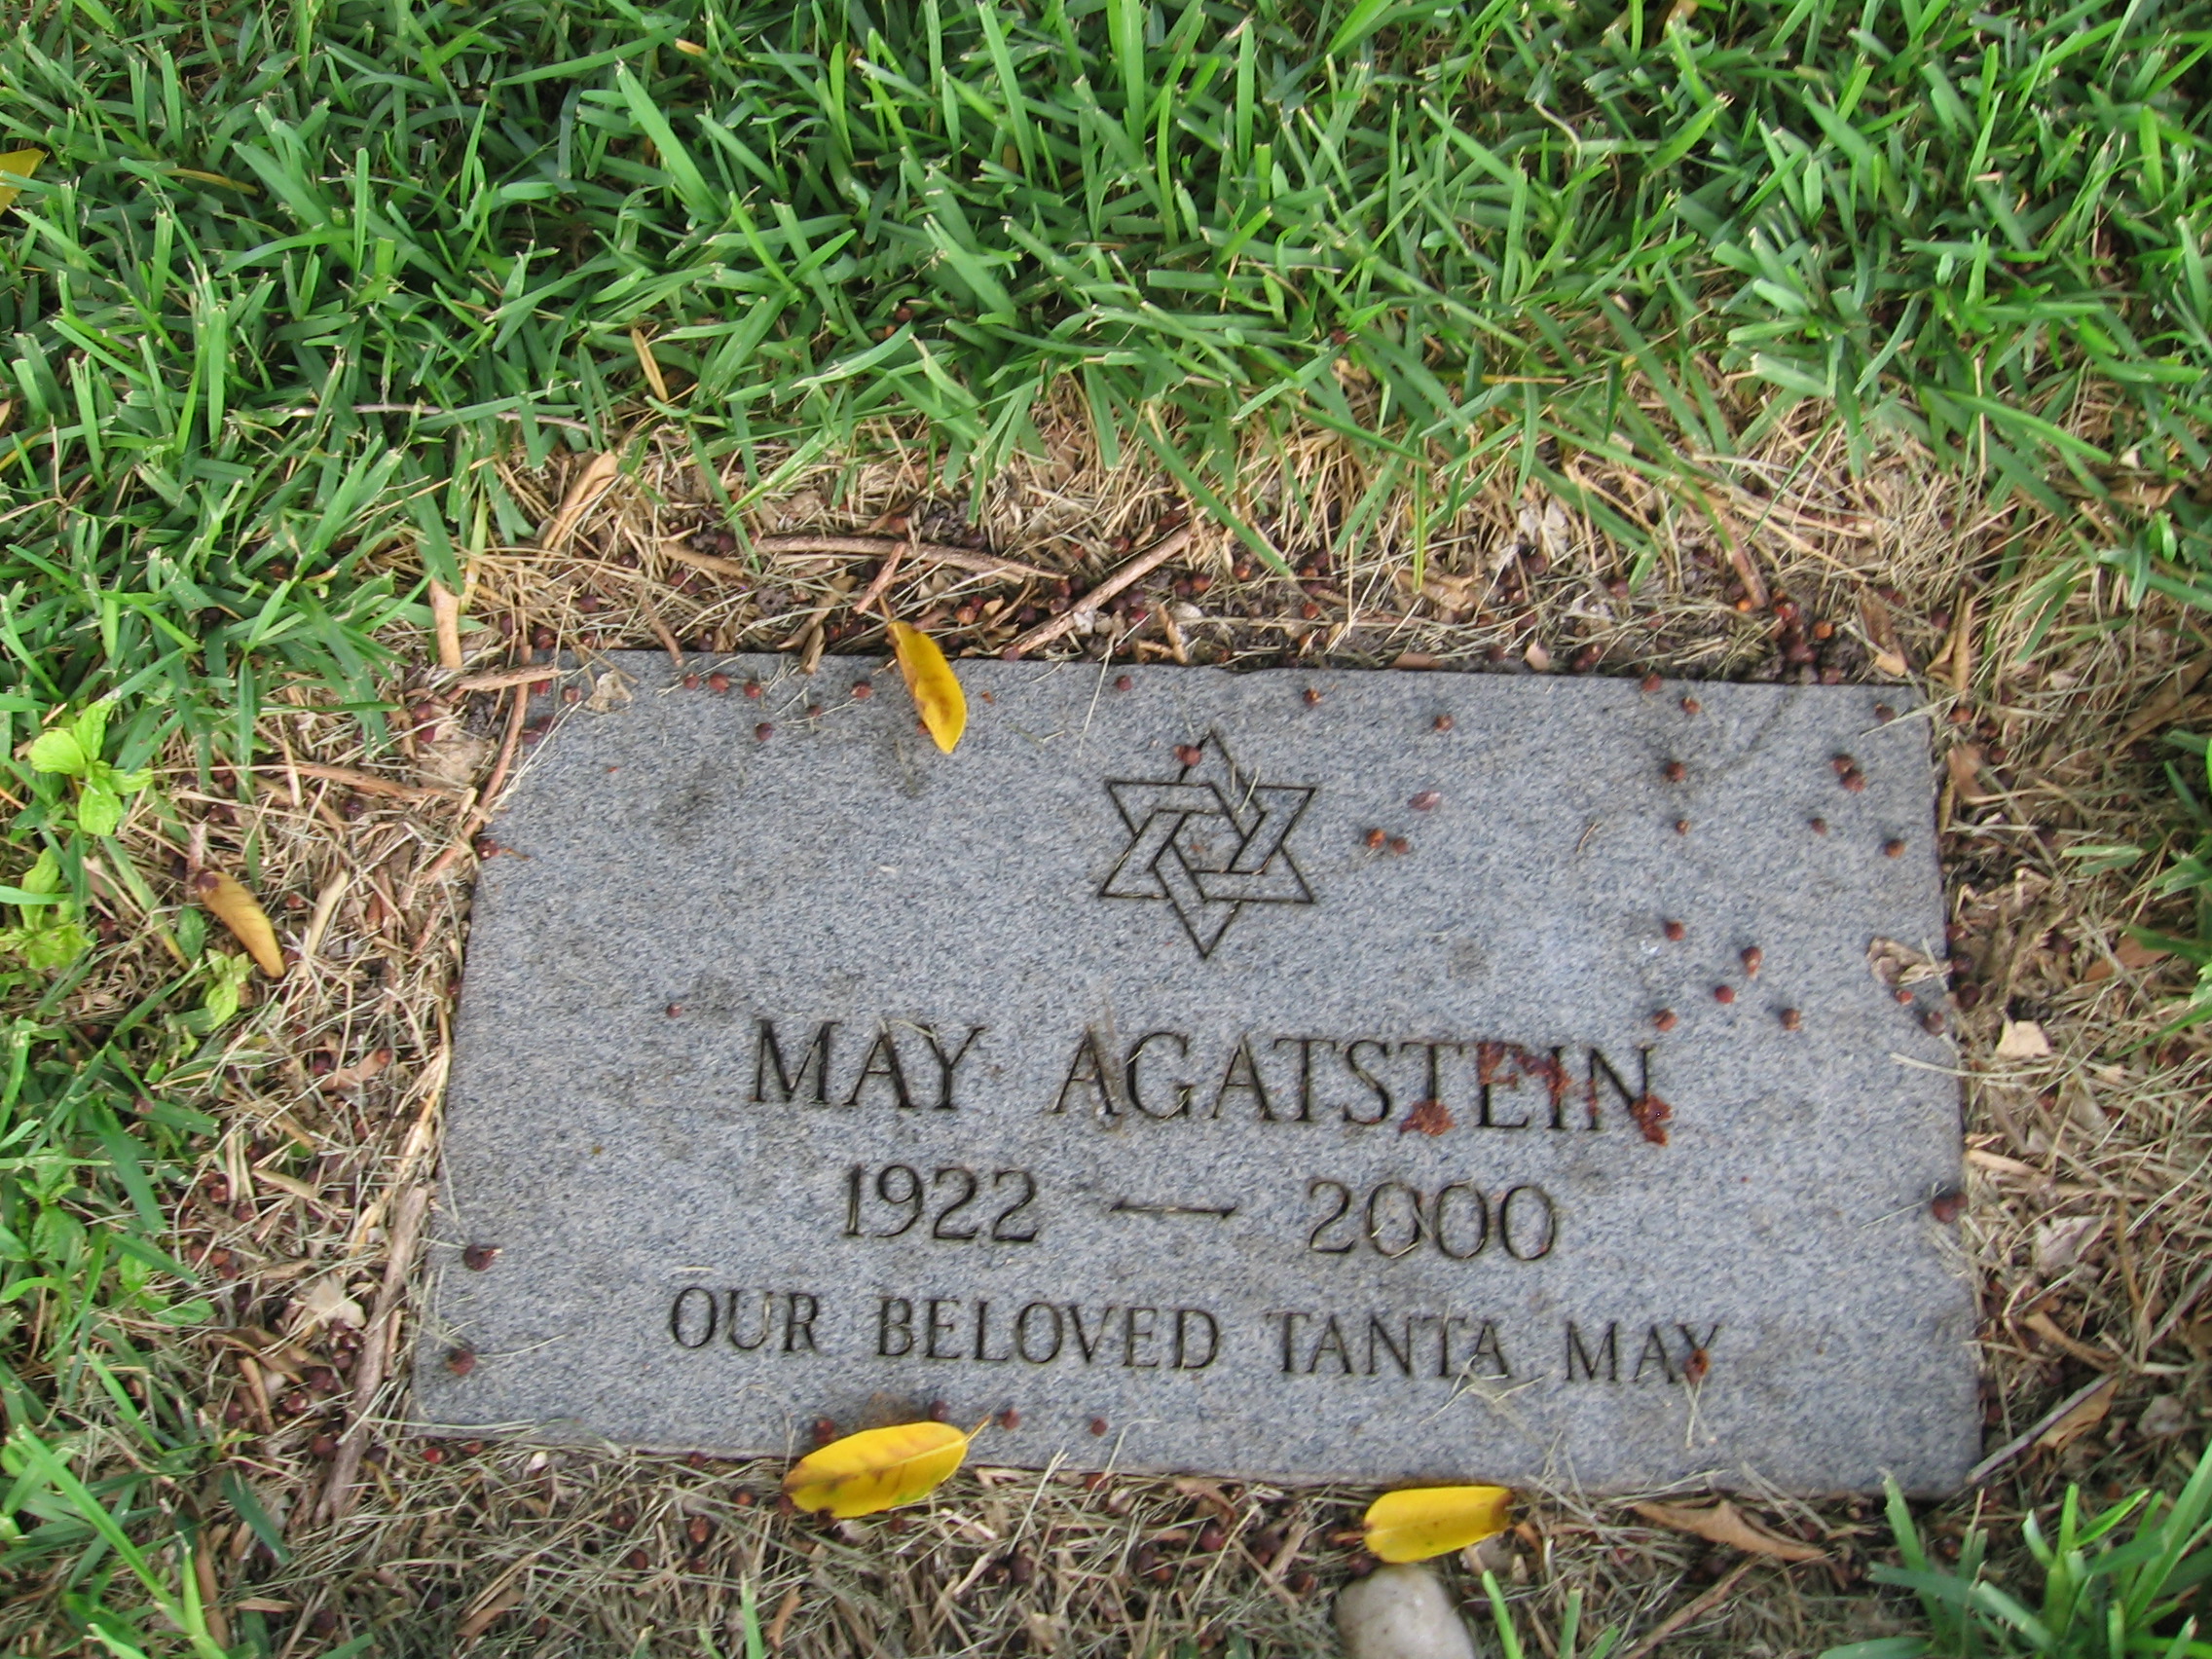 May Agatstein